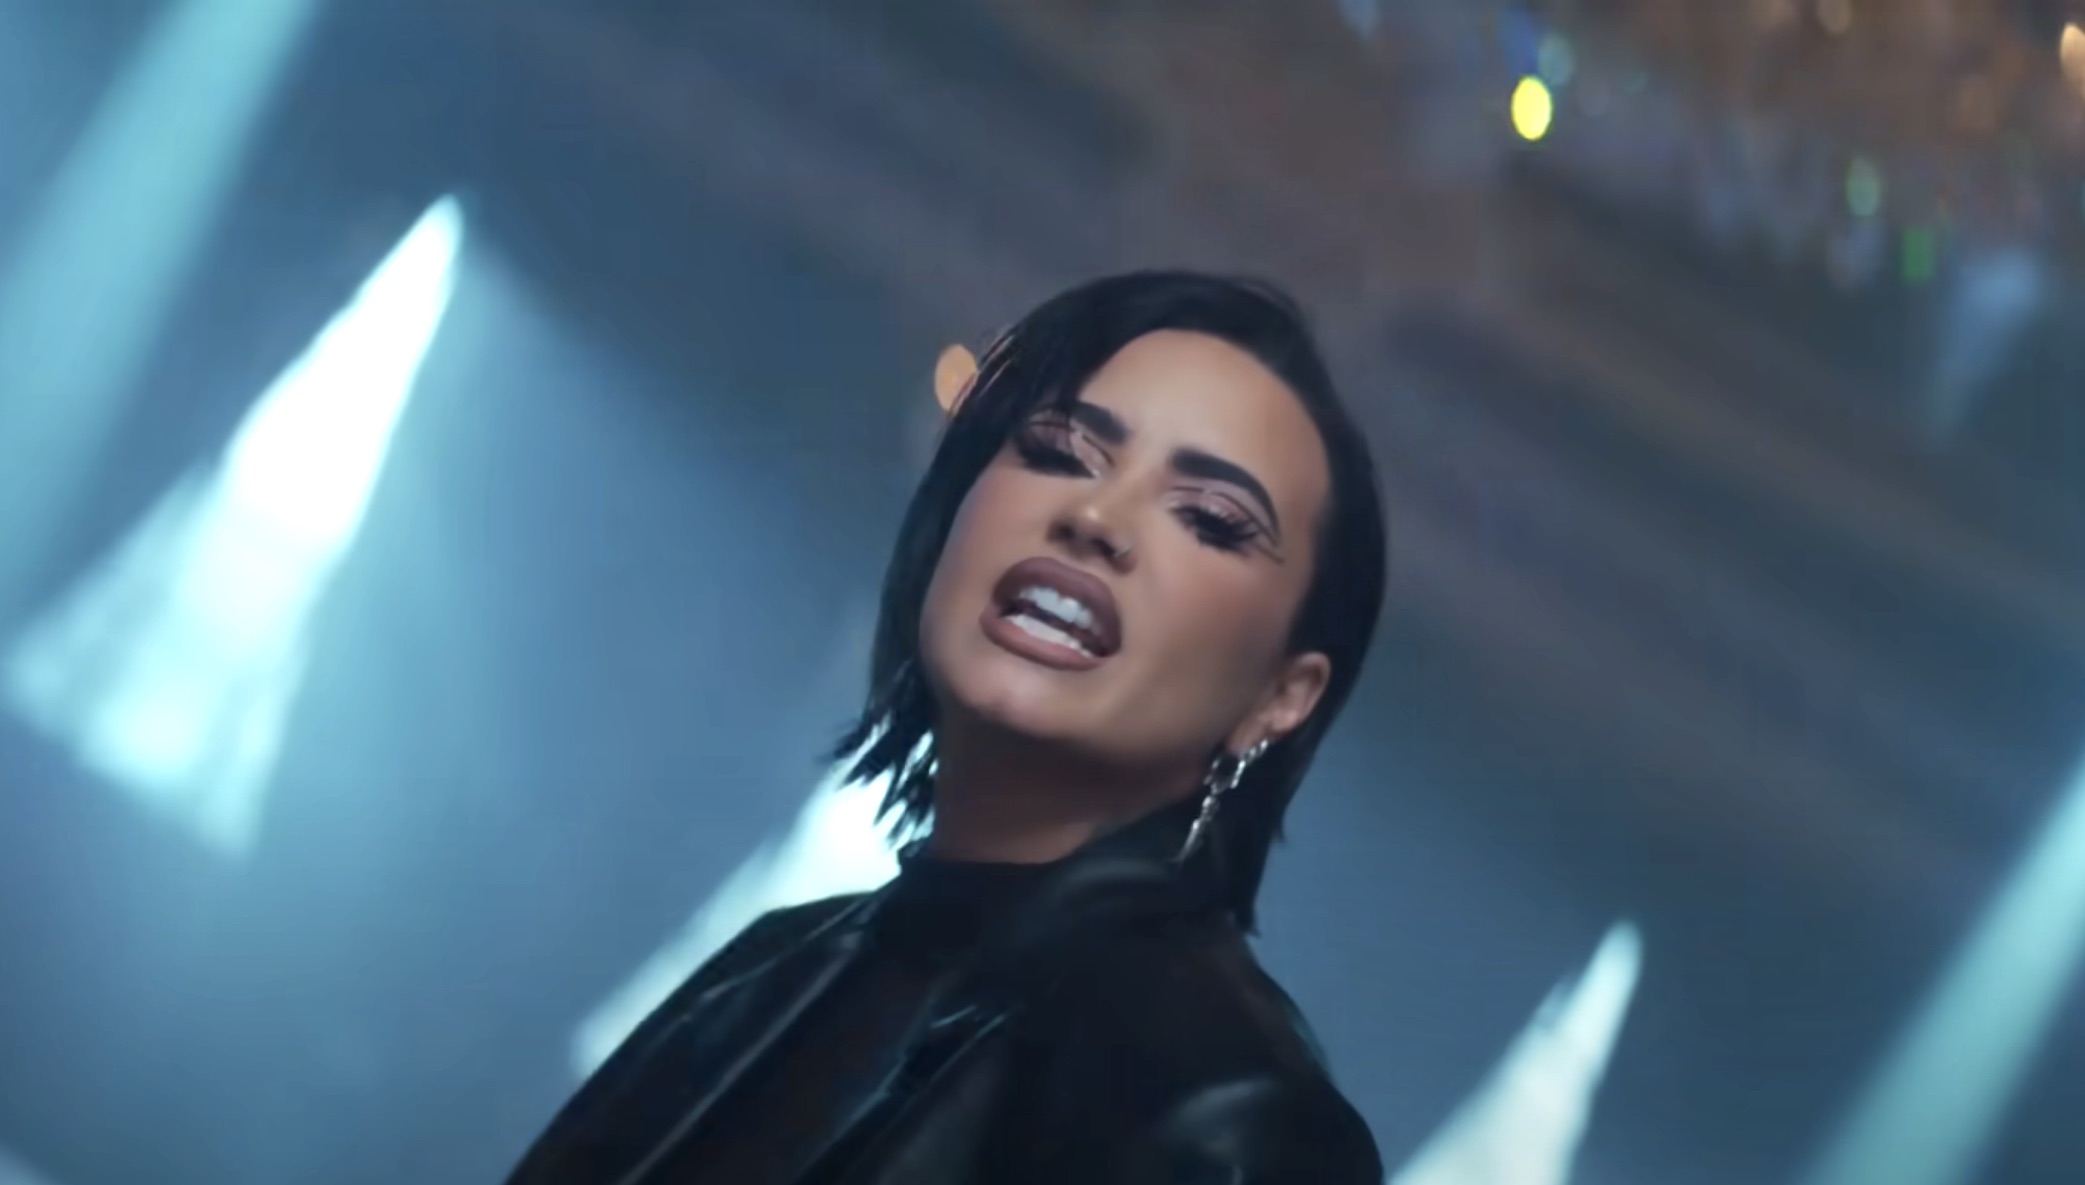 Demi Lovato - Still Alive (From the Original Motion Picture Scream